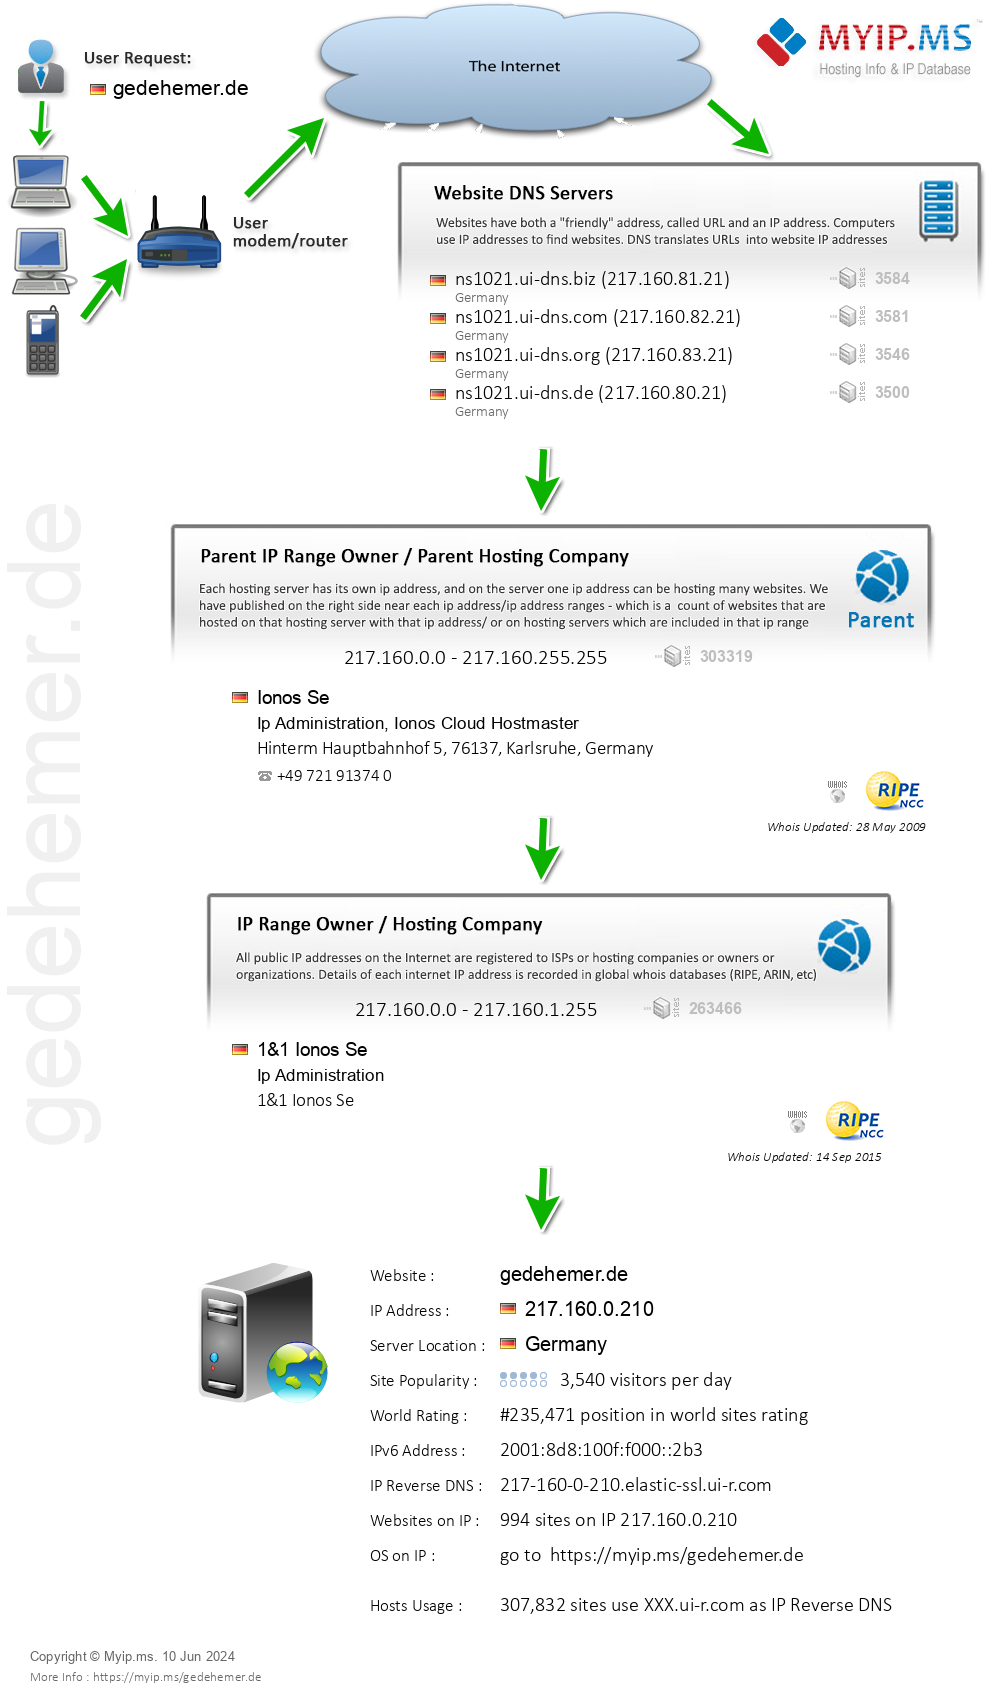 Gedehemer.de - Website Hosting Visual IP Diagram